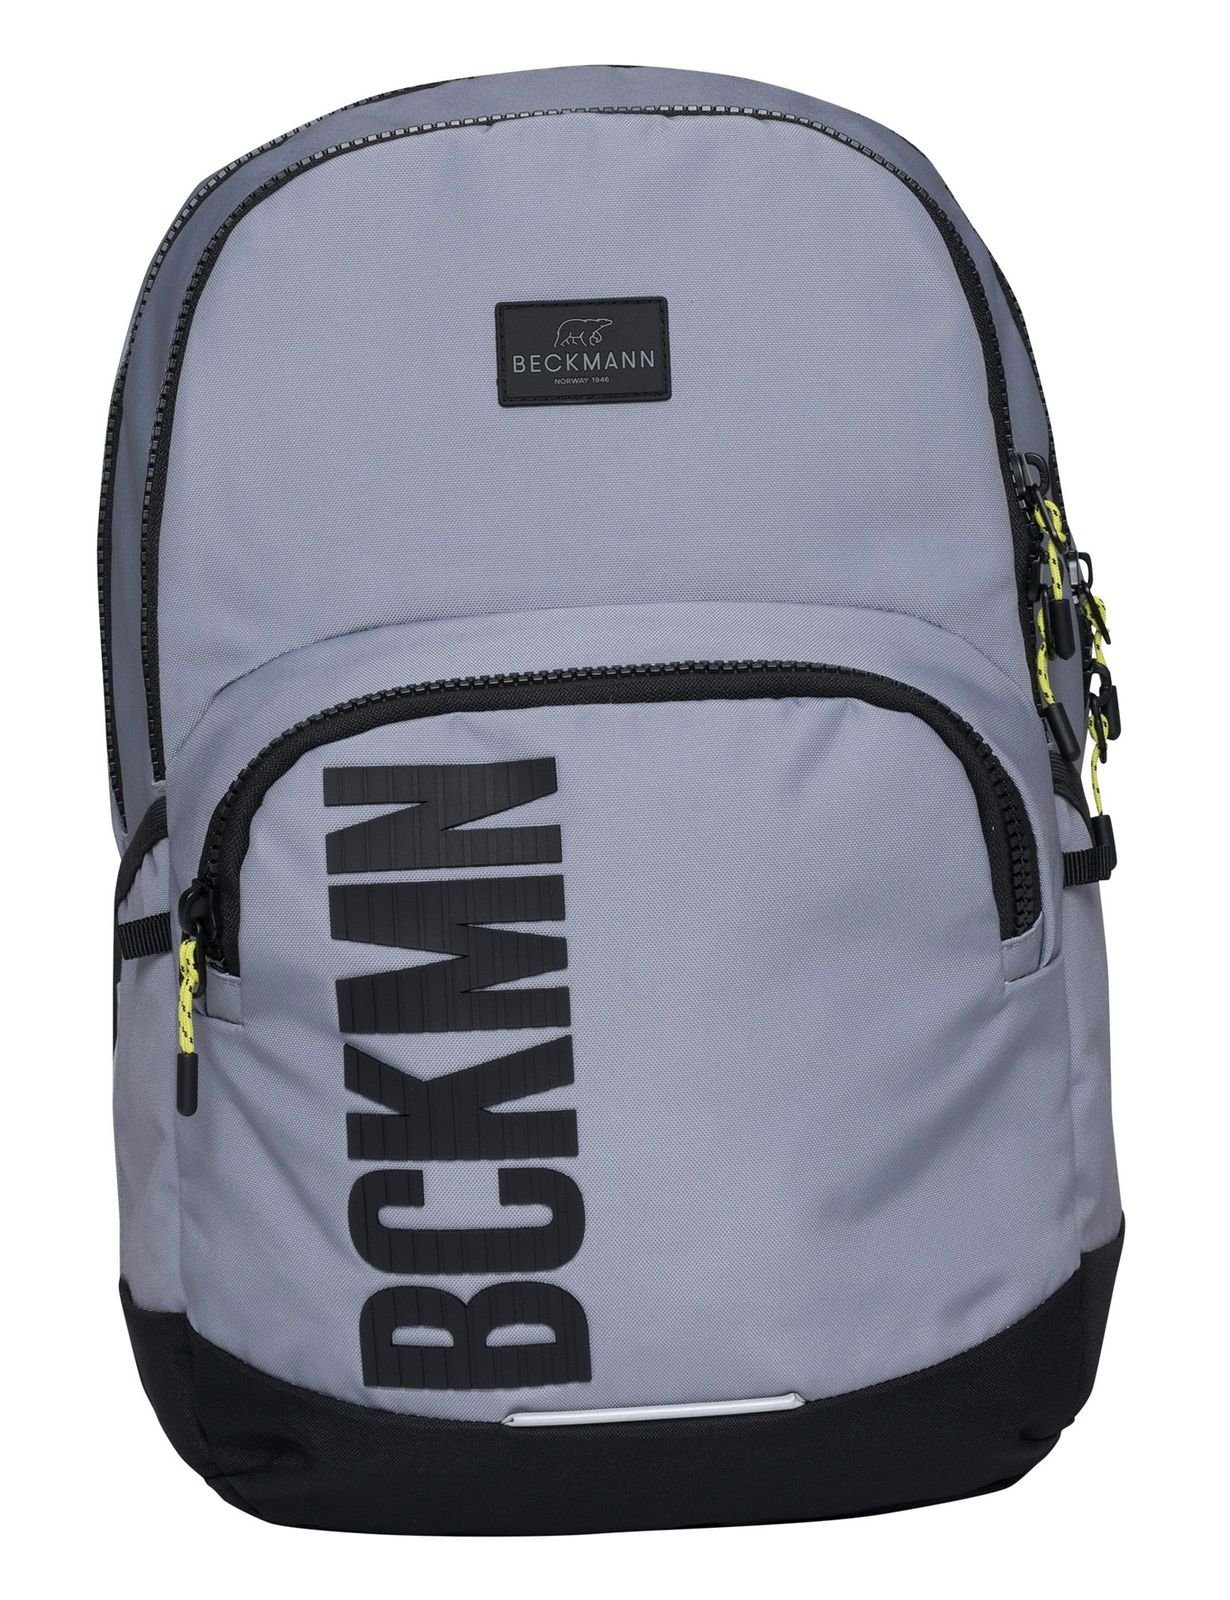 Beckmann Rucksack Sport Grey